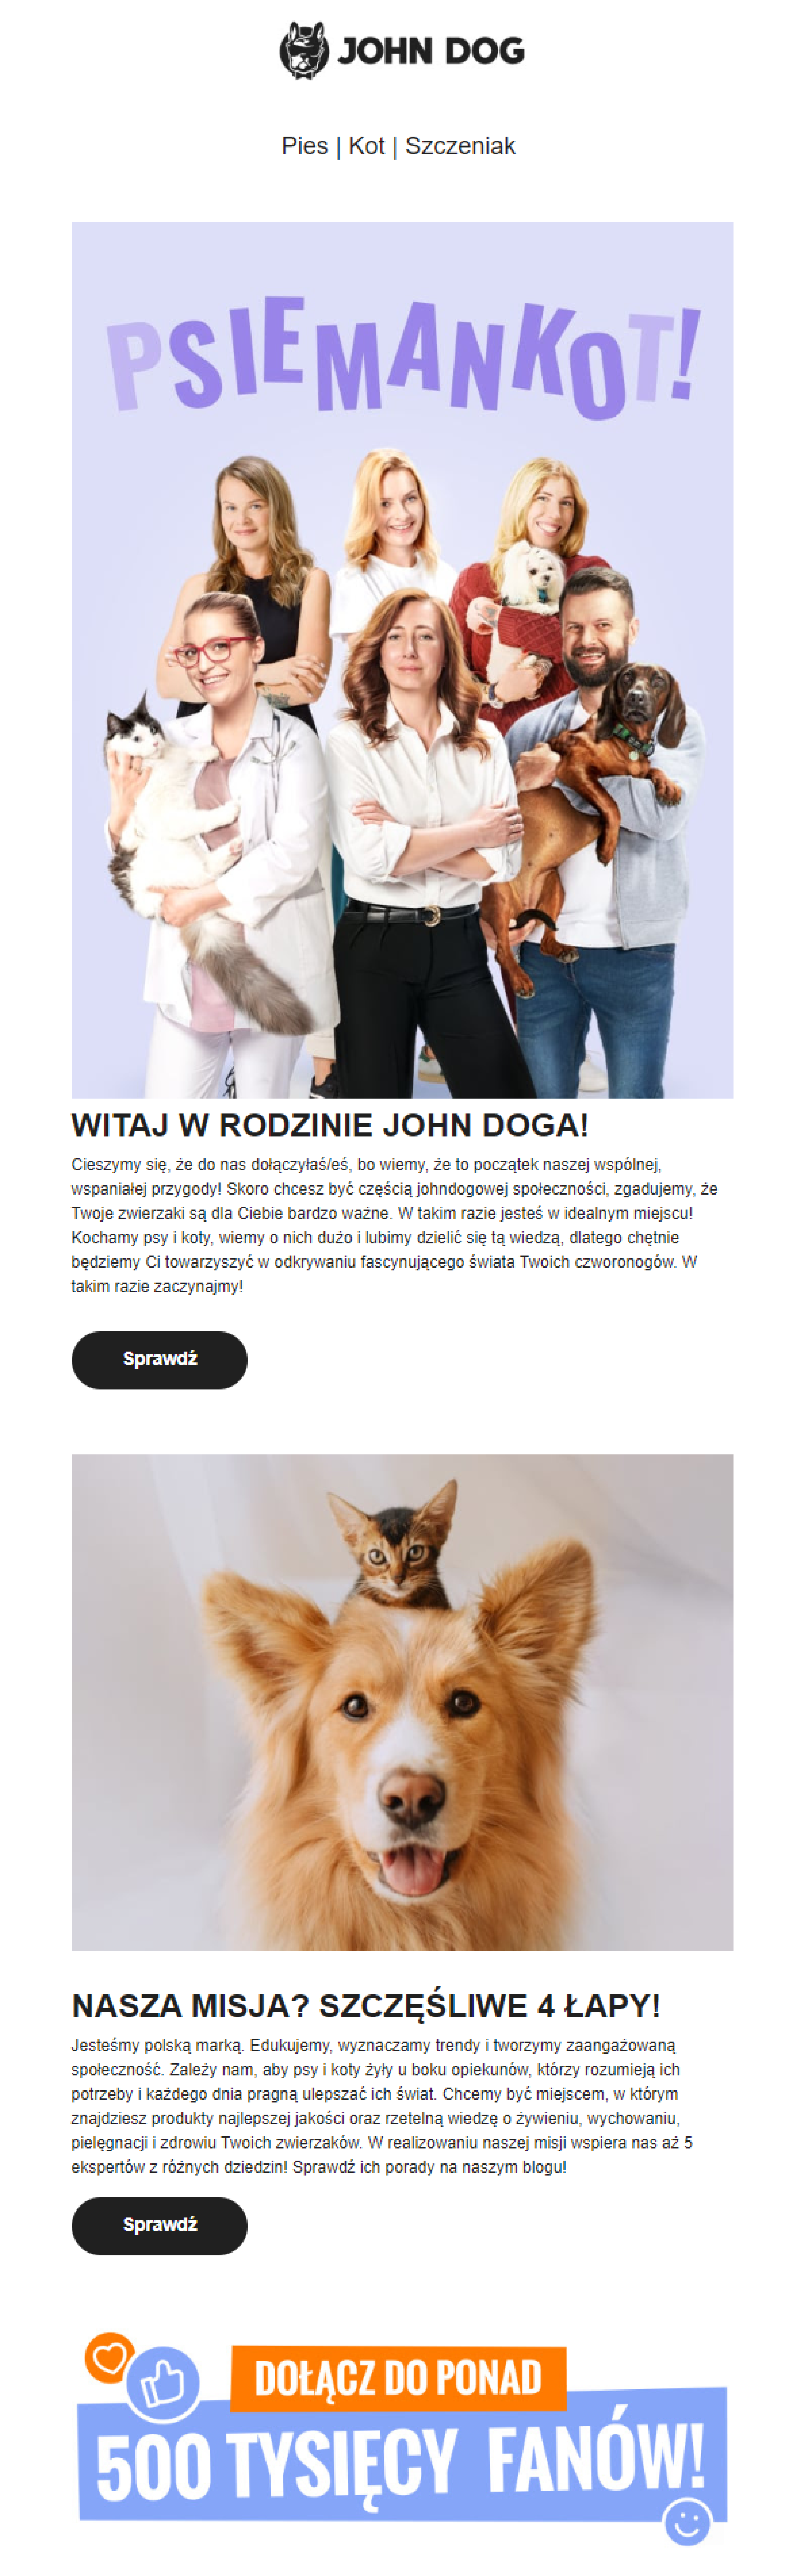 John Dog - newsletter